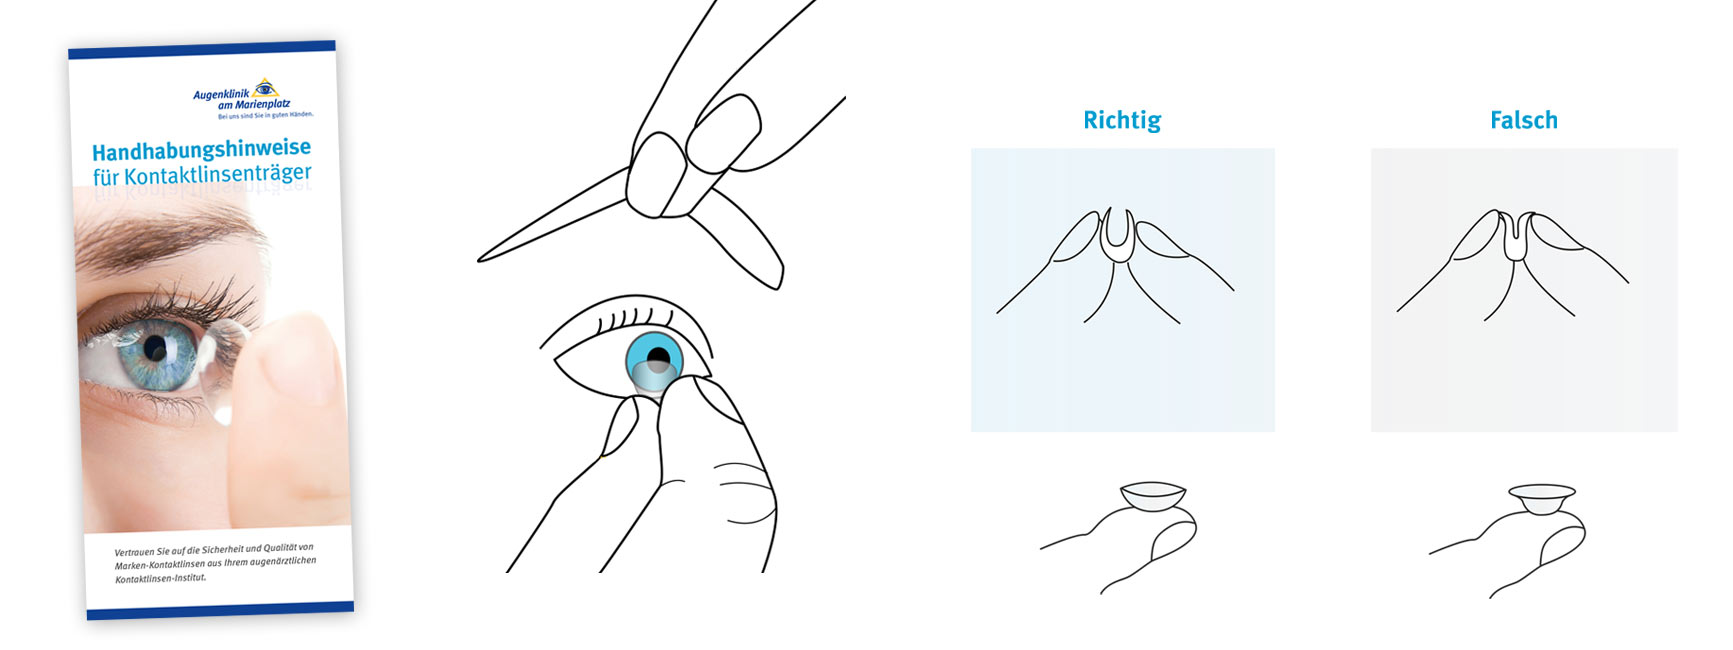 Illustration zur Handhabung von Kontaktlinsen